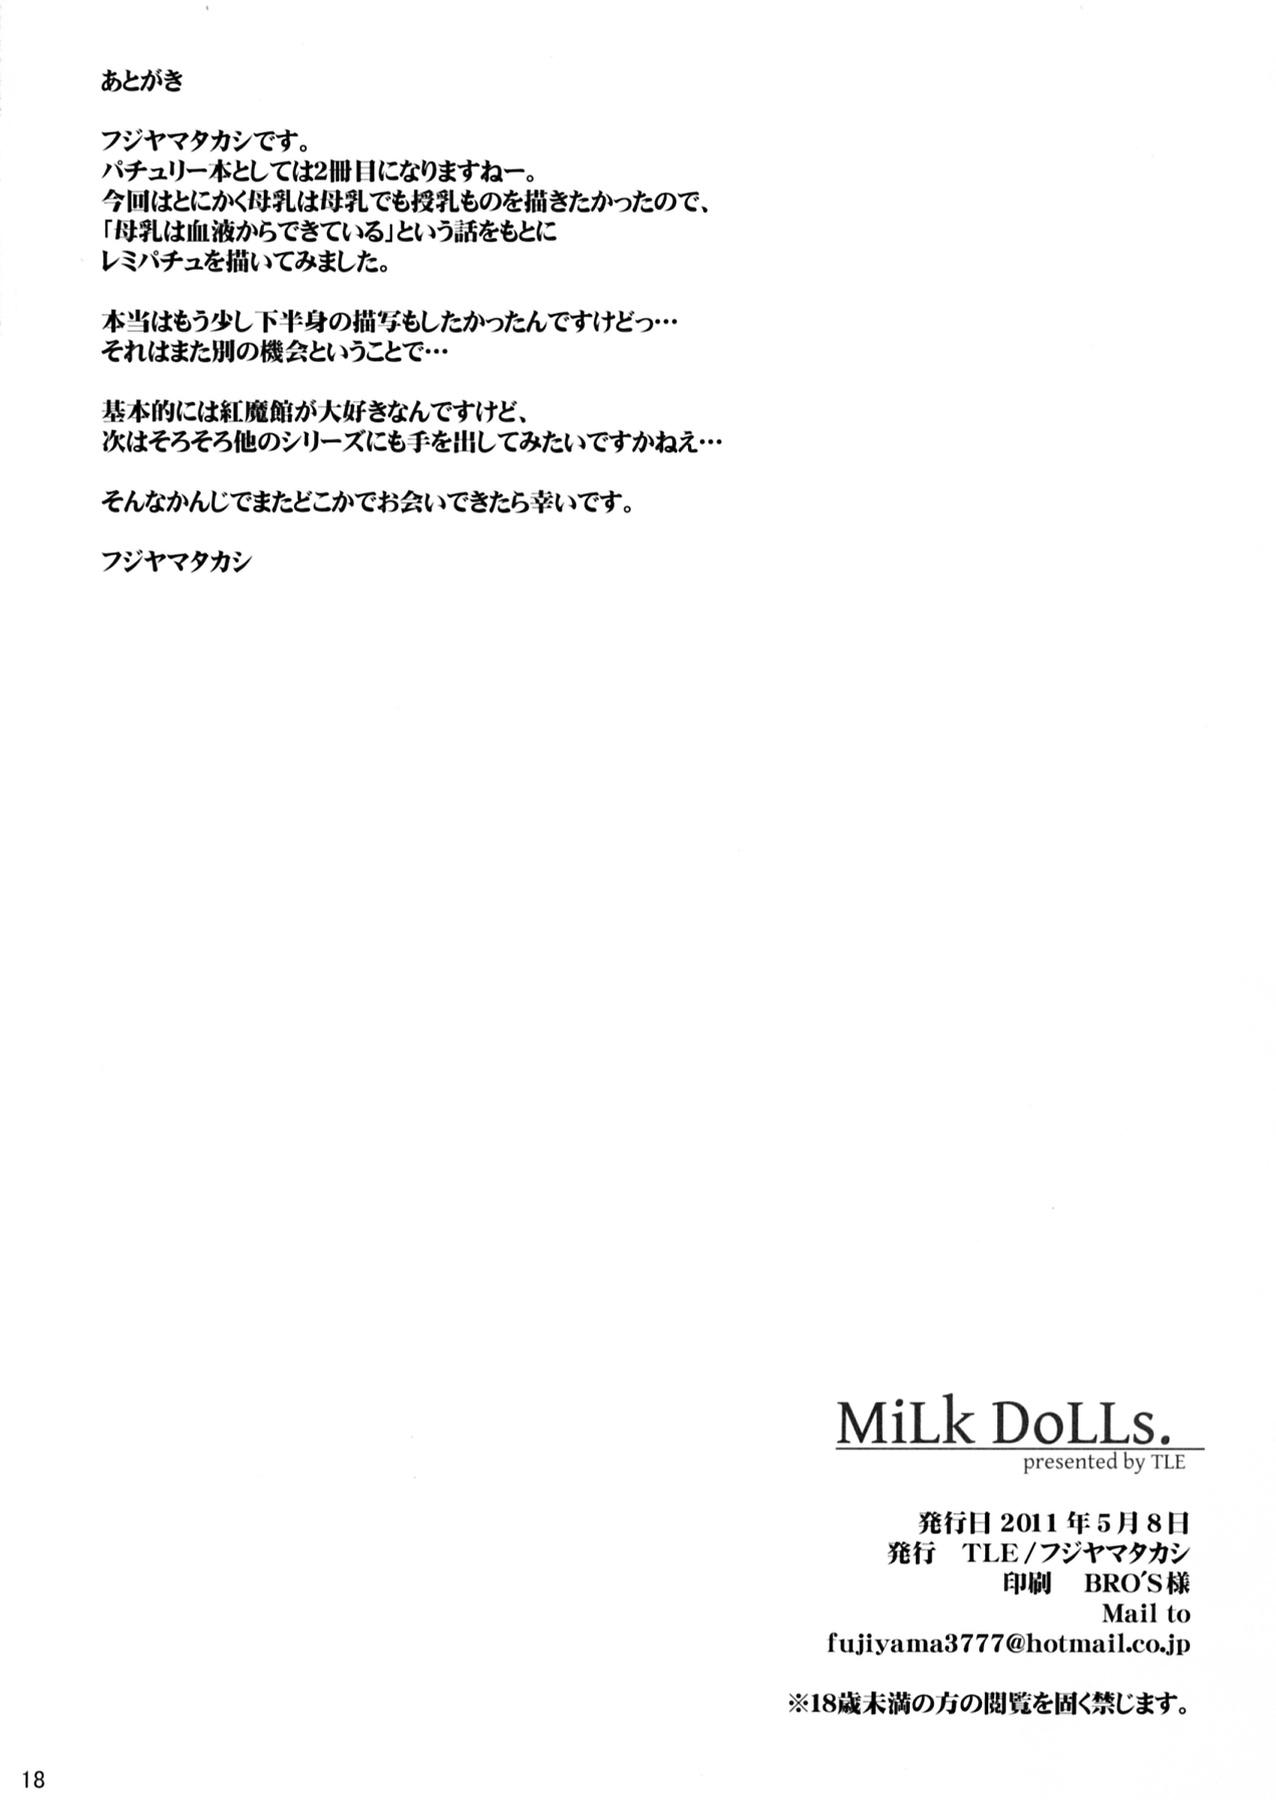 Amateur MiLK DoLLs - Touhou project Pick Up - Page 18